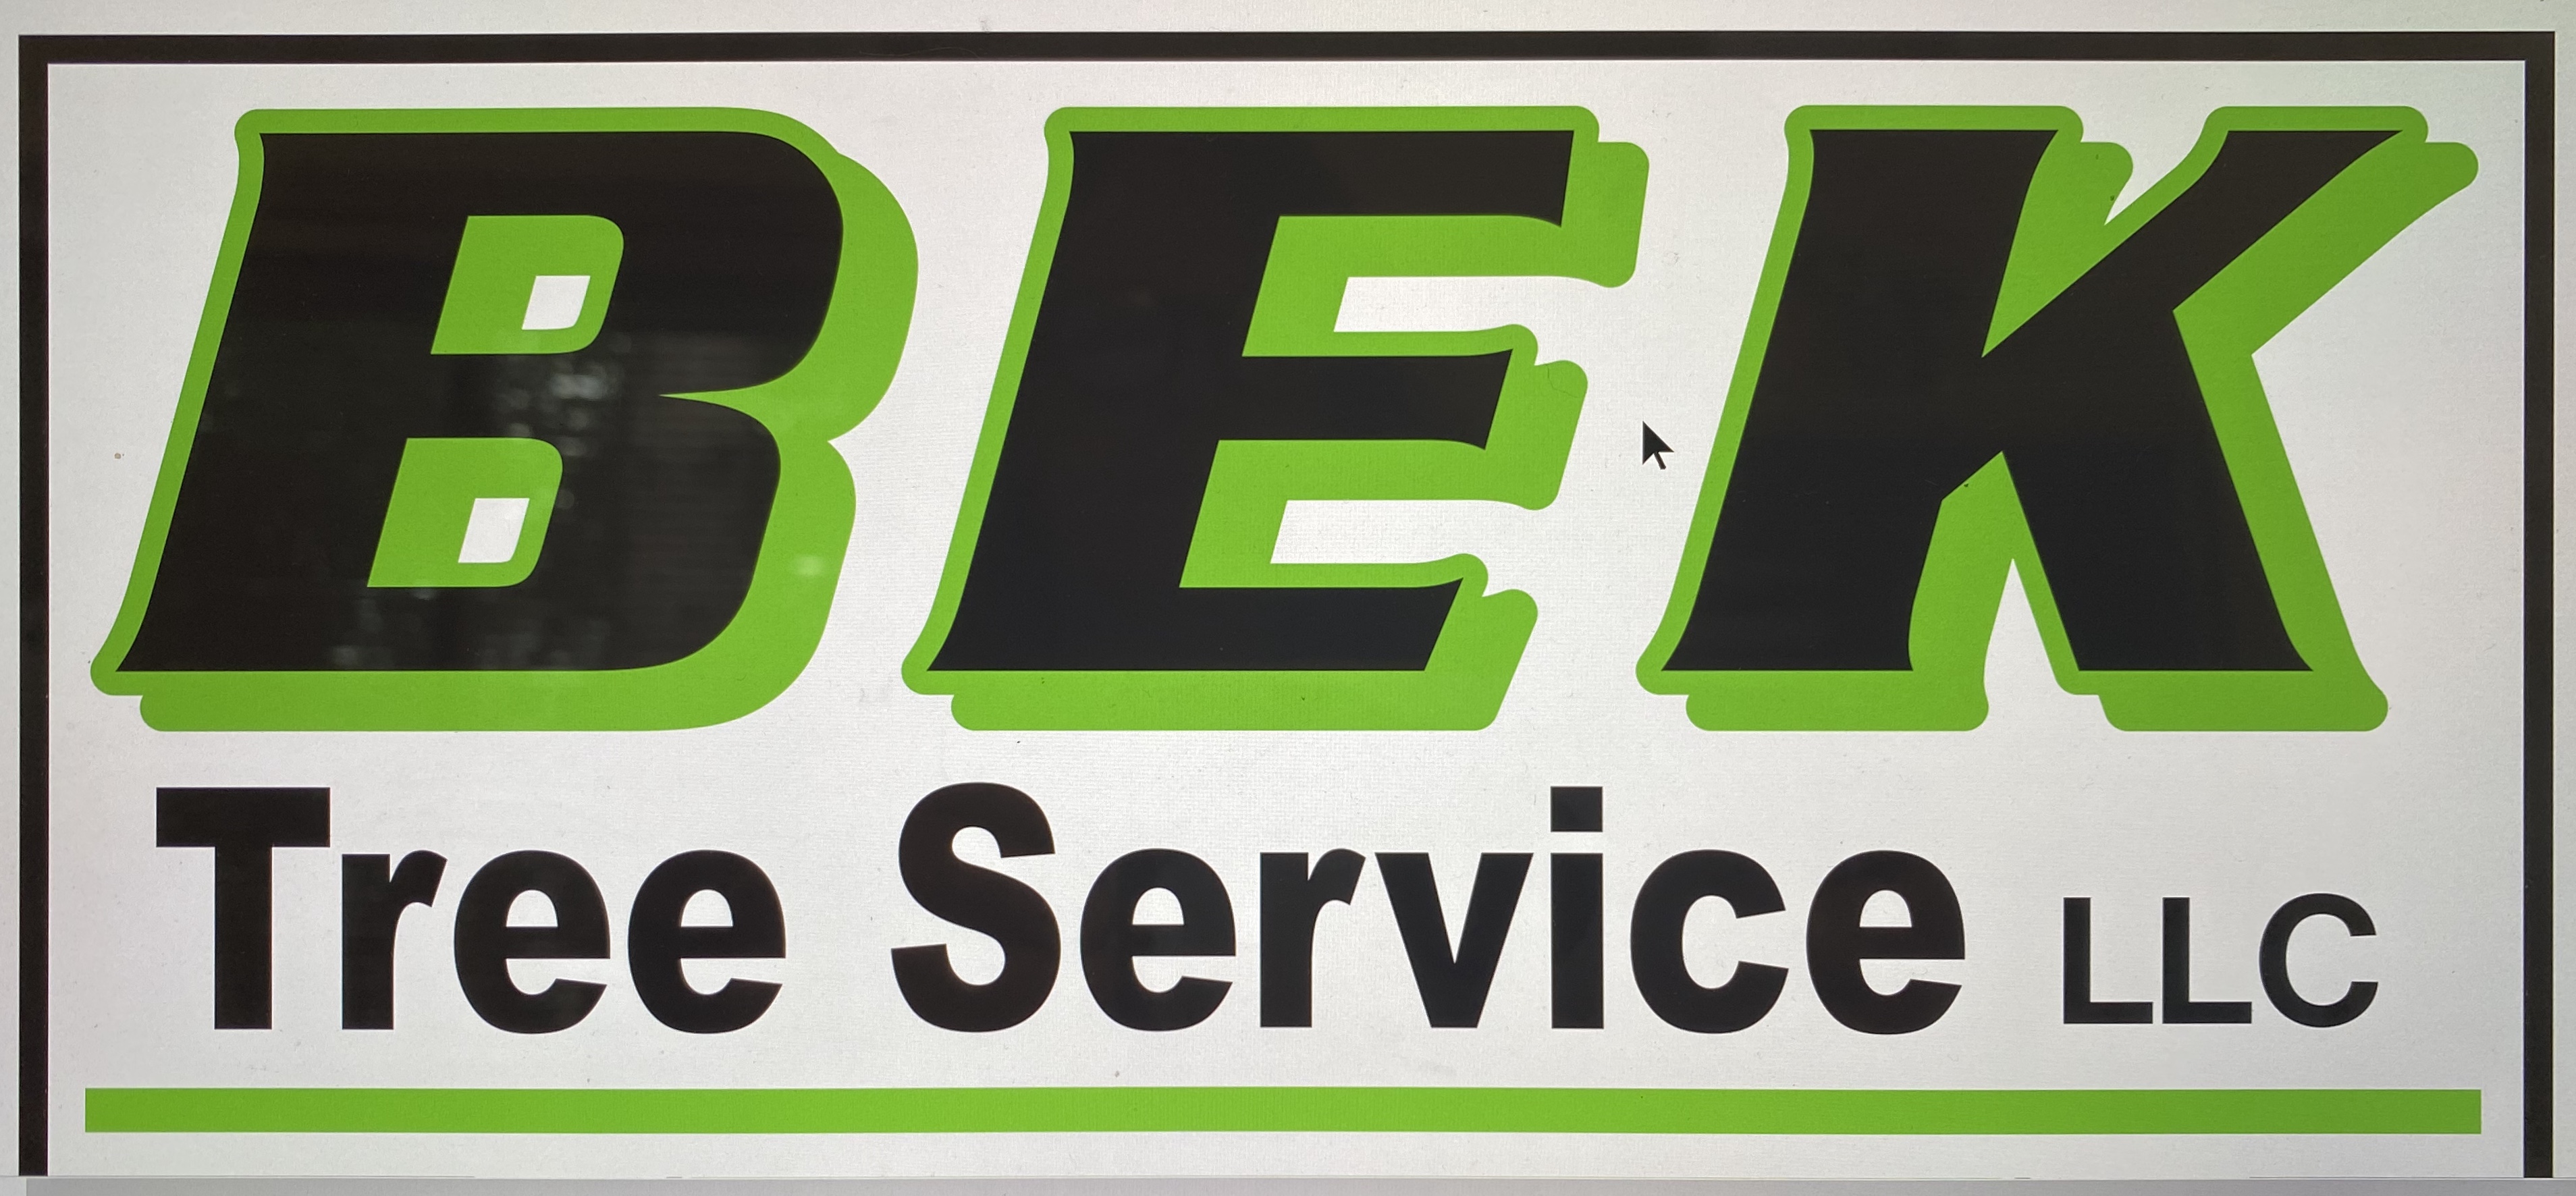 BEK Tree Service, LLC Logo